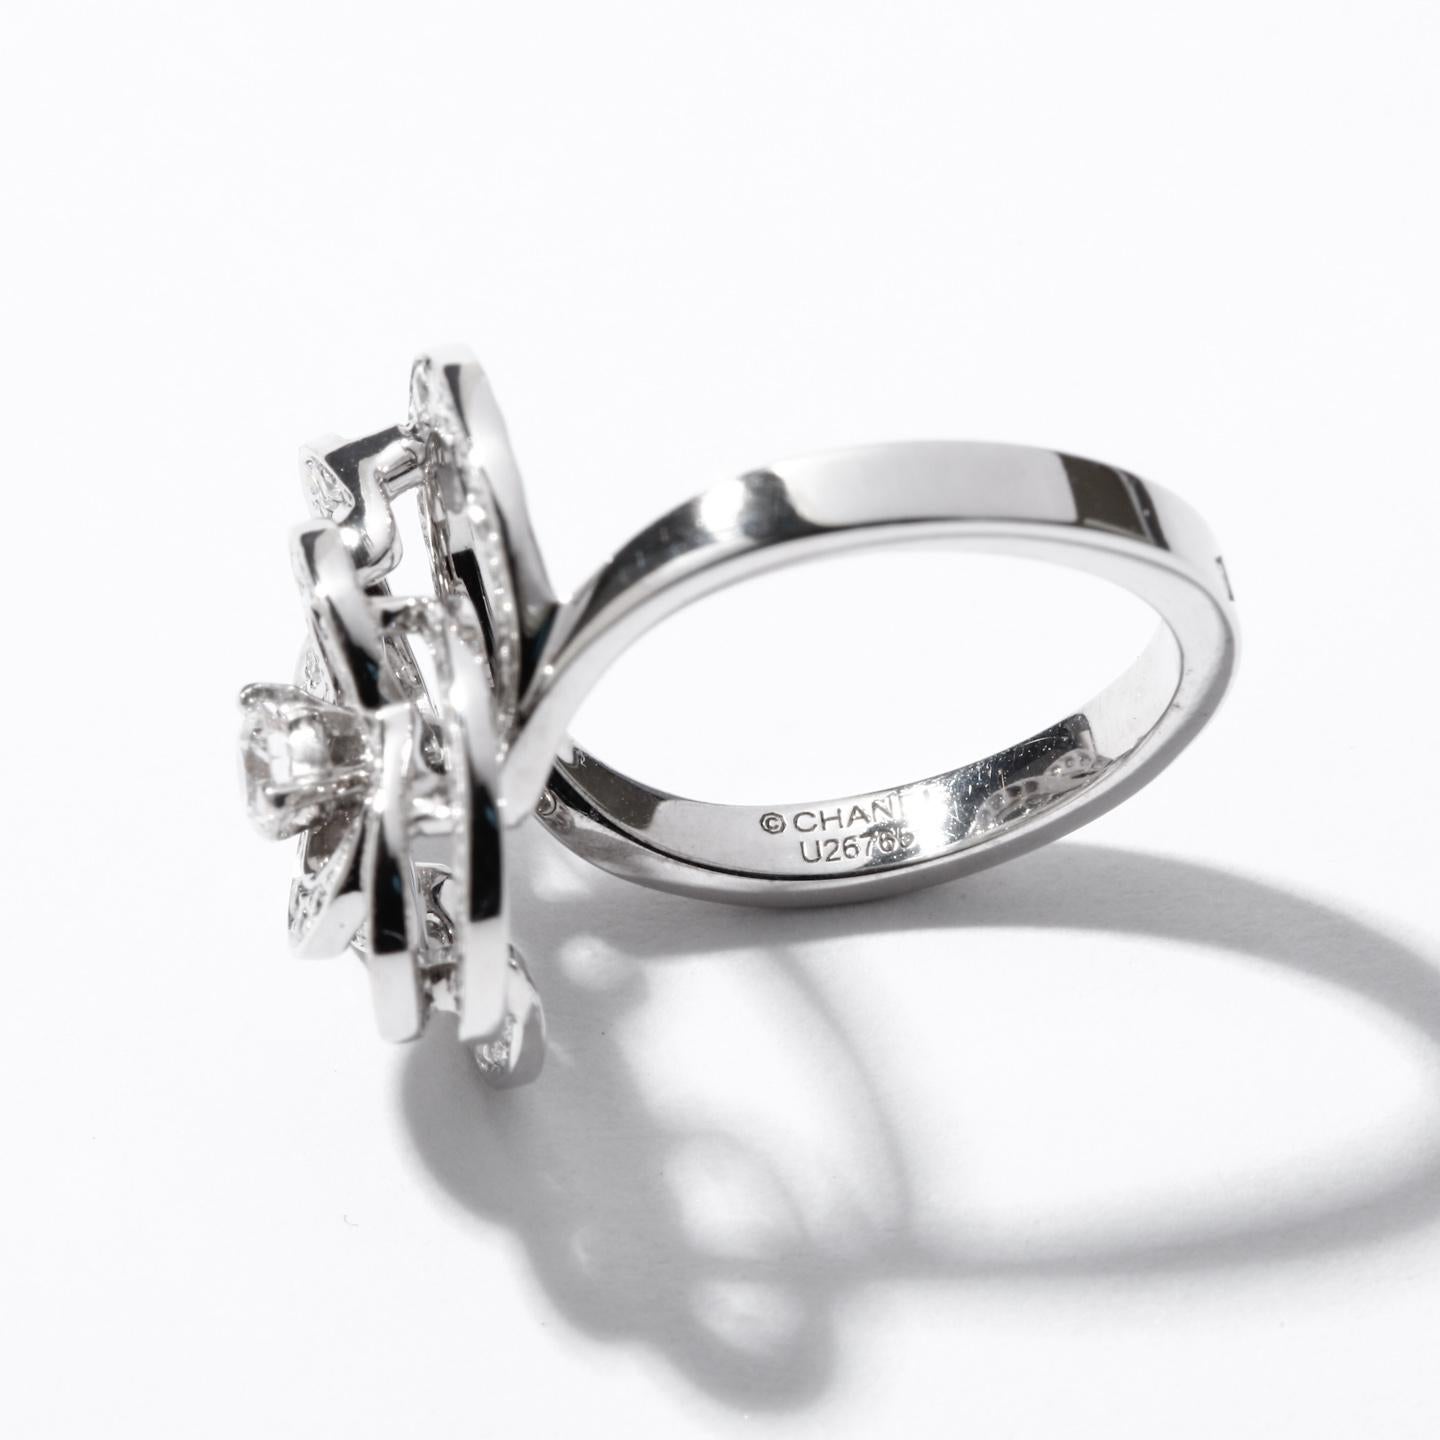 Round Cut Chanel Fil de Camélia Ring 18 Karat White Gold and Diamonds 0.75 Carat, J2579 For Sale